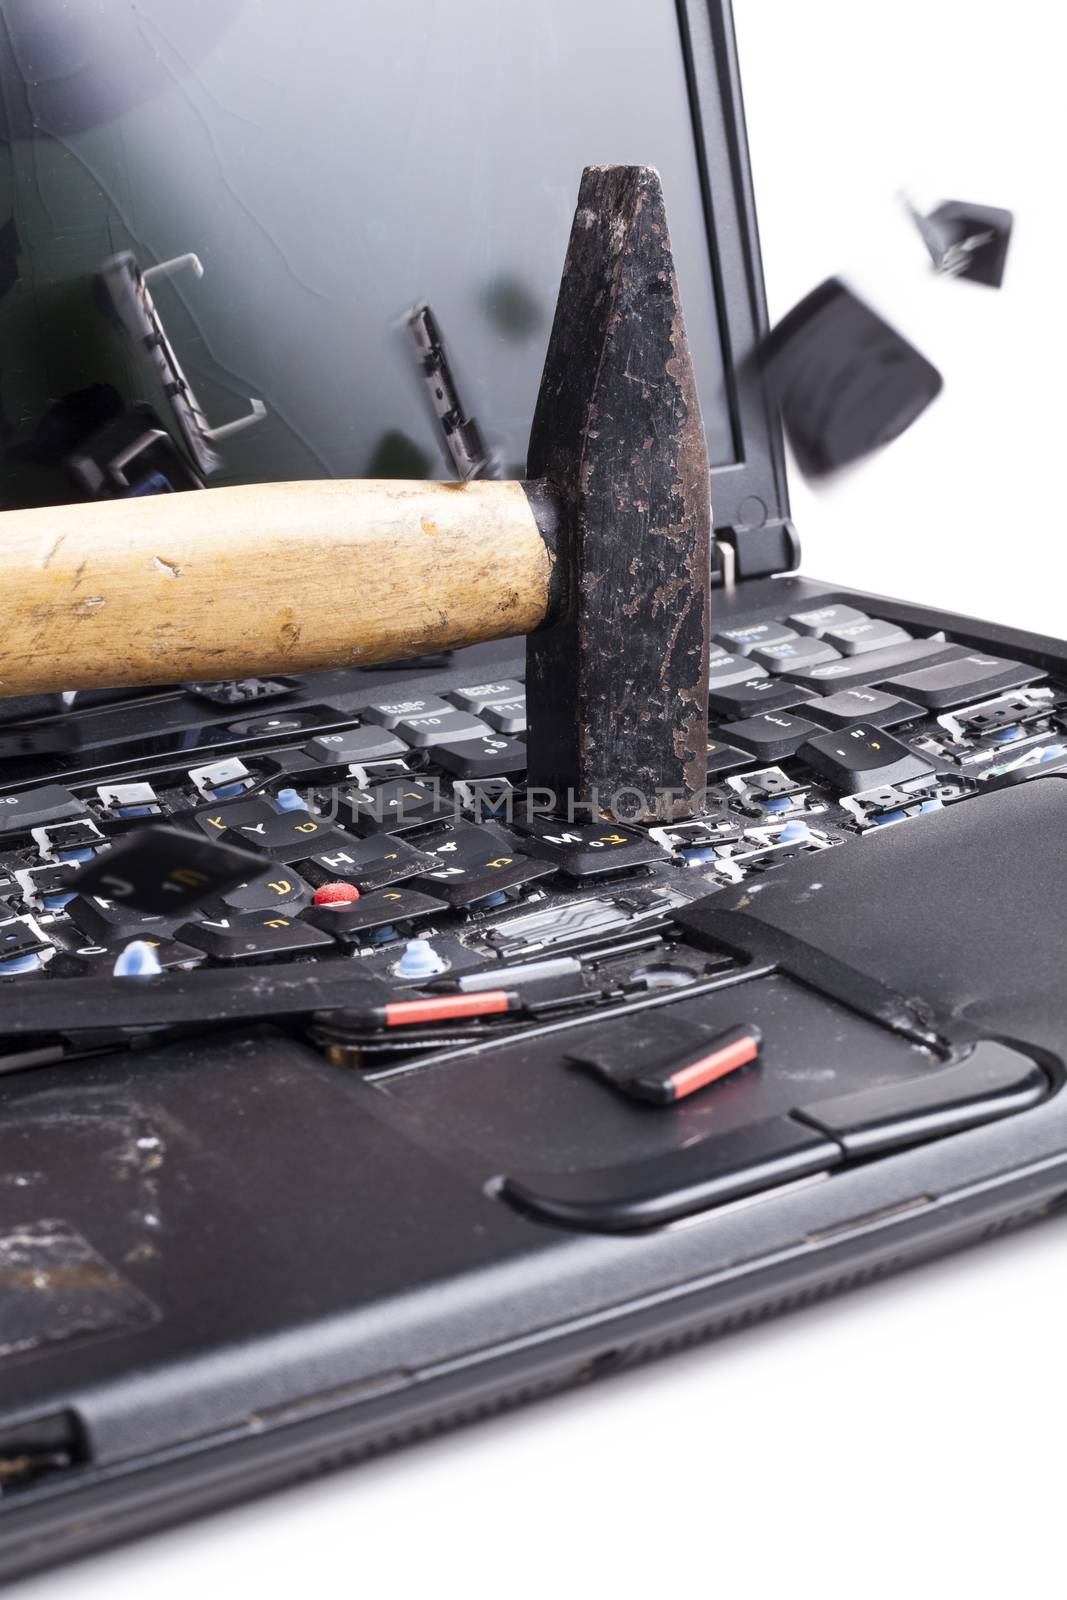 Smashing laptop with black hammer on white background